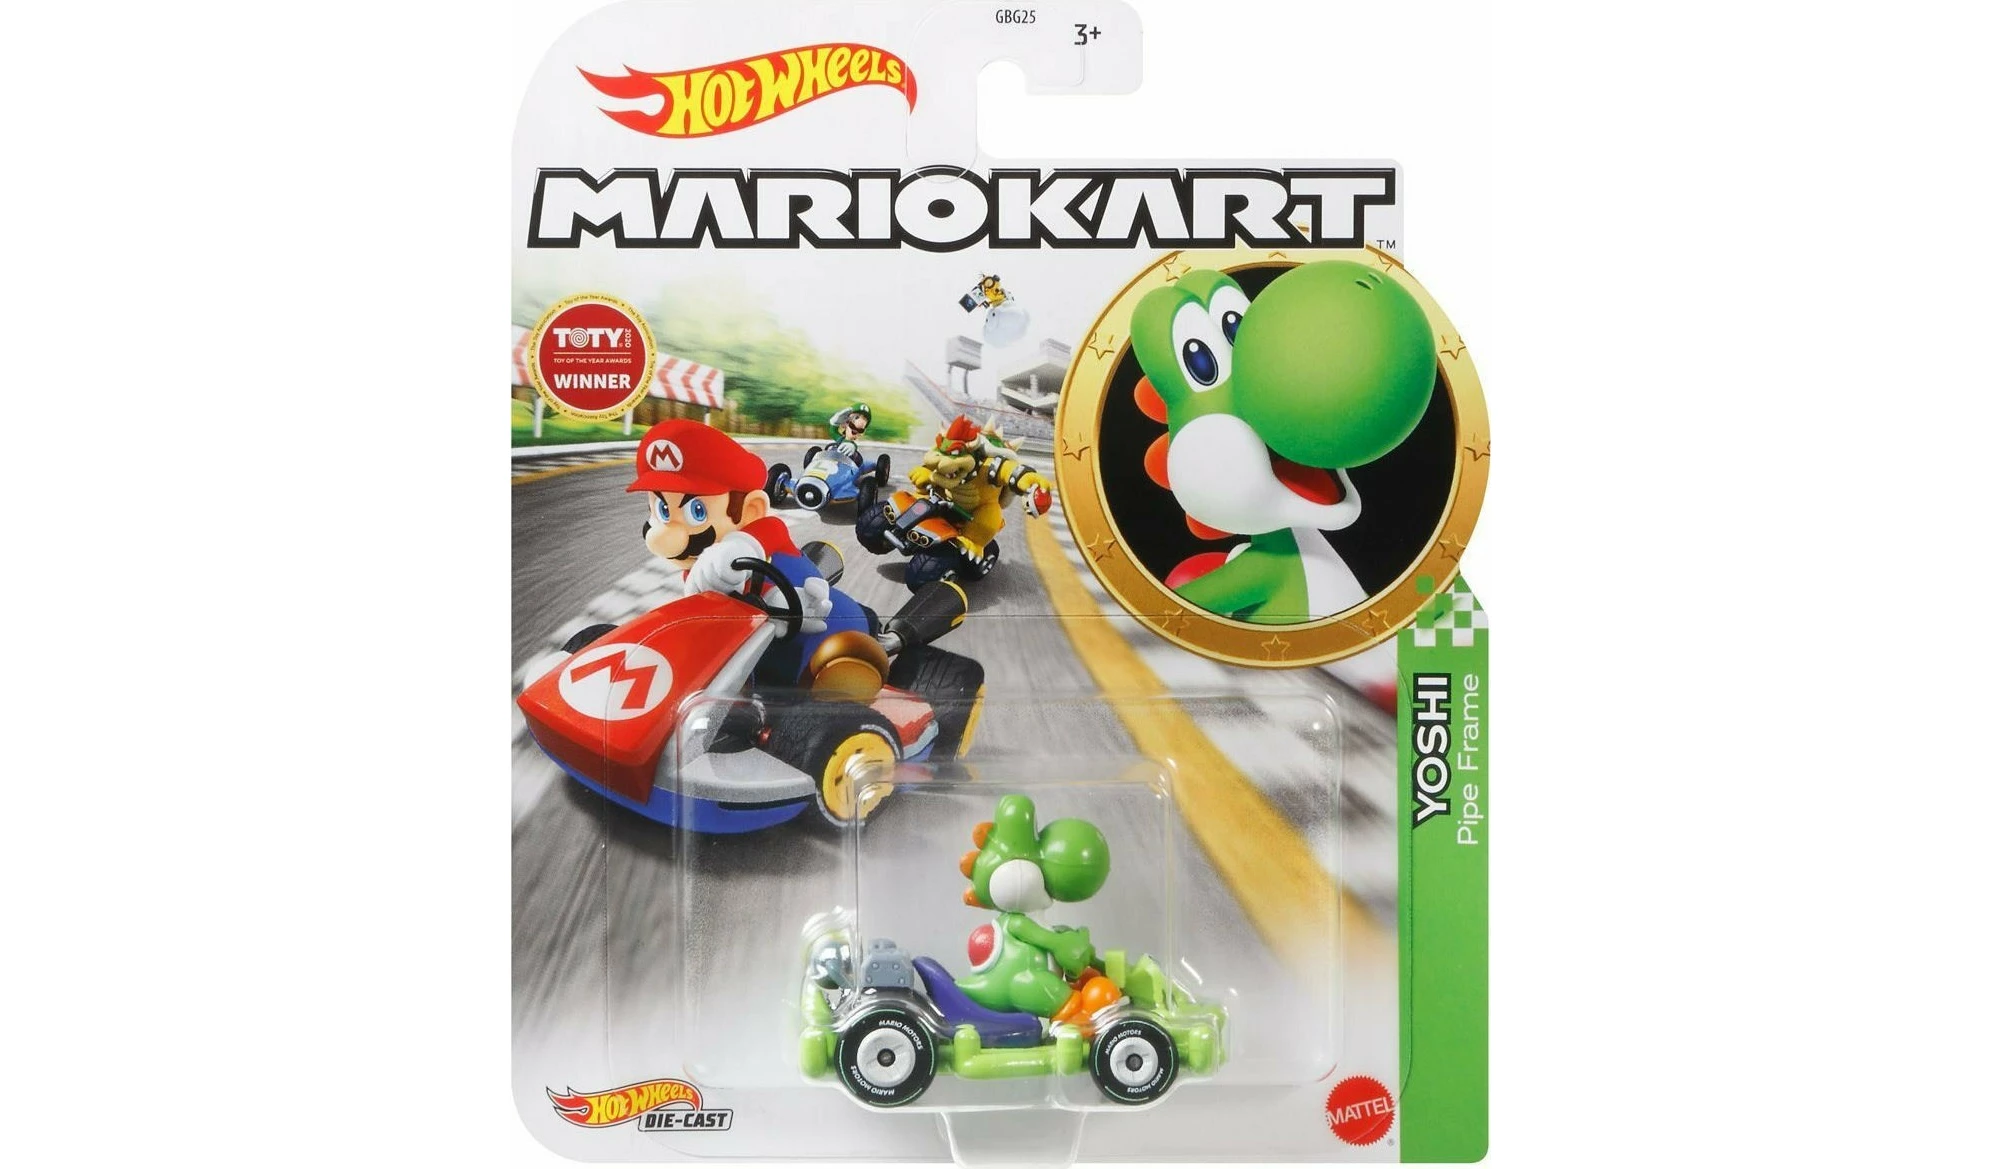 Mattel Hot Wheels Αυτοκινητάκια Mario Kart Yoshi Gbg25grn19 Bestpricegr 3010